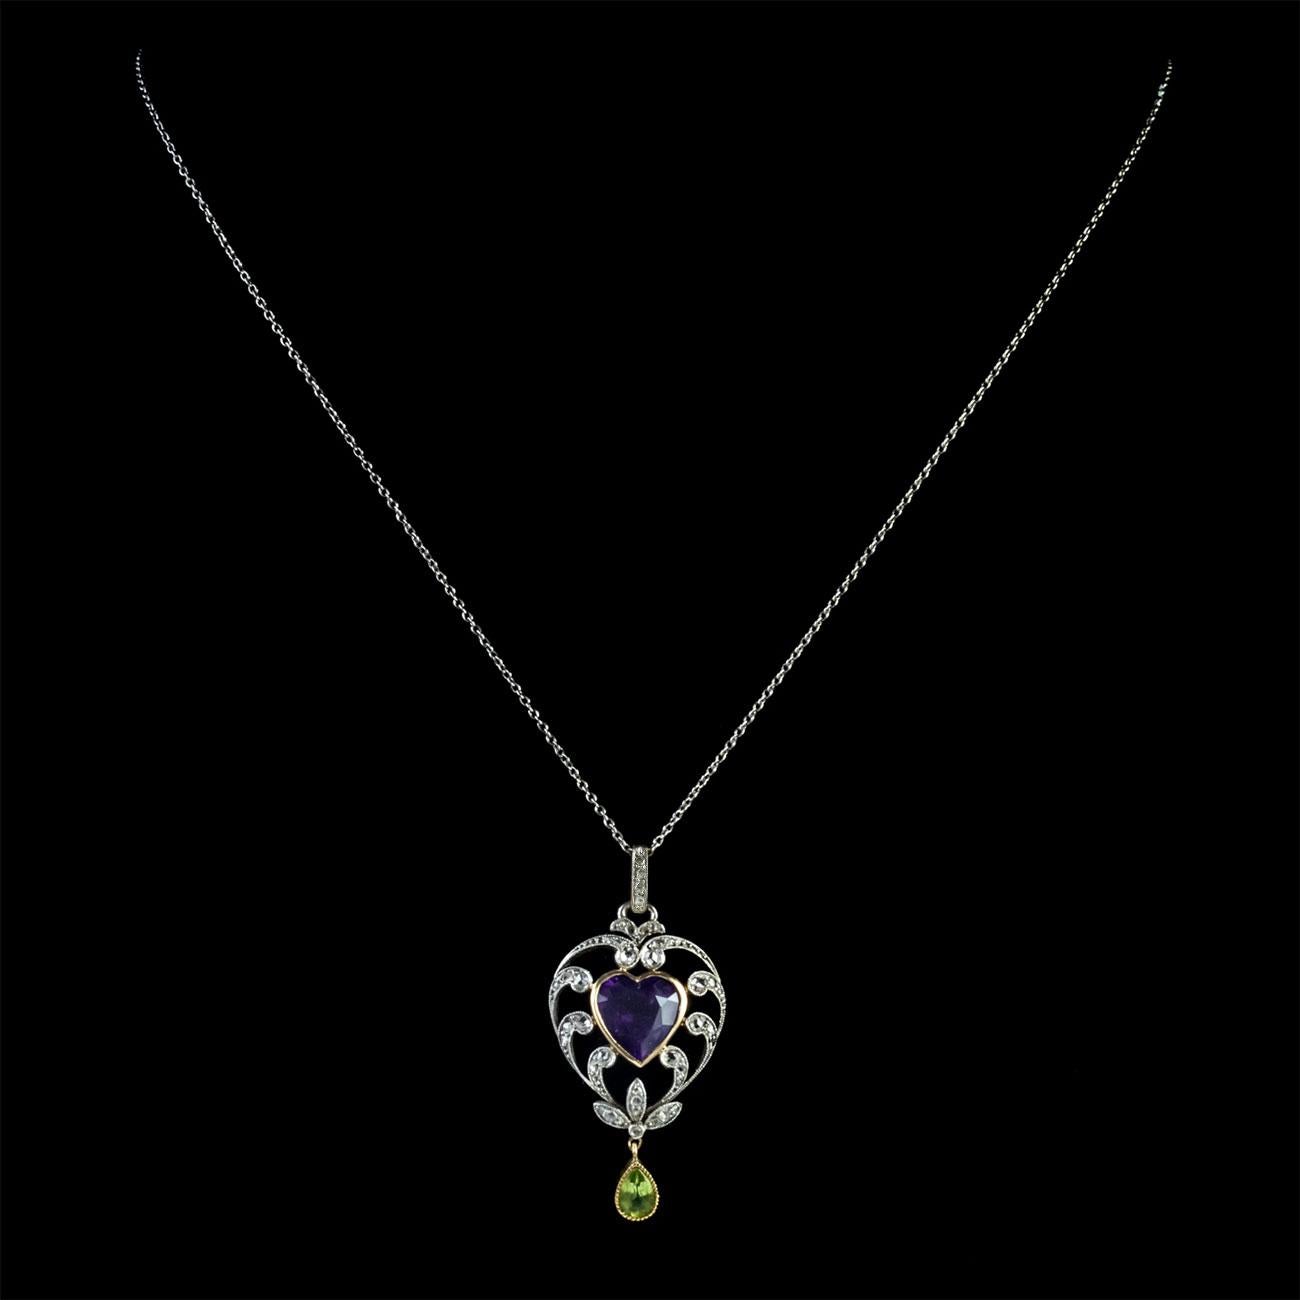 Women's Antique Suffragette Heart Pendant Necklace Platinum 18 Carat Gold Edwardian